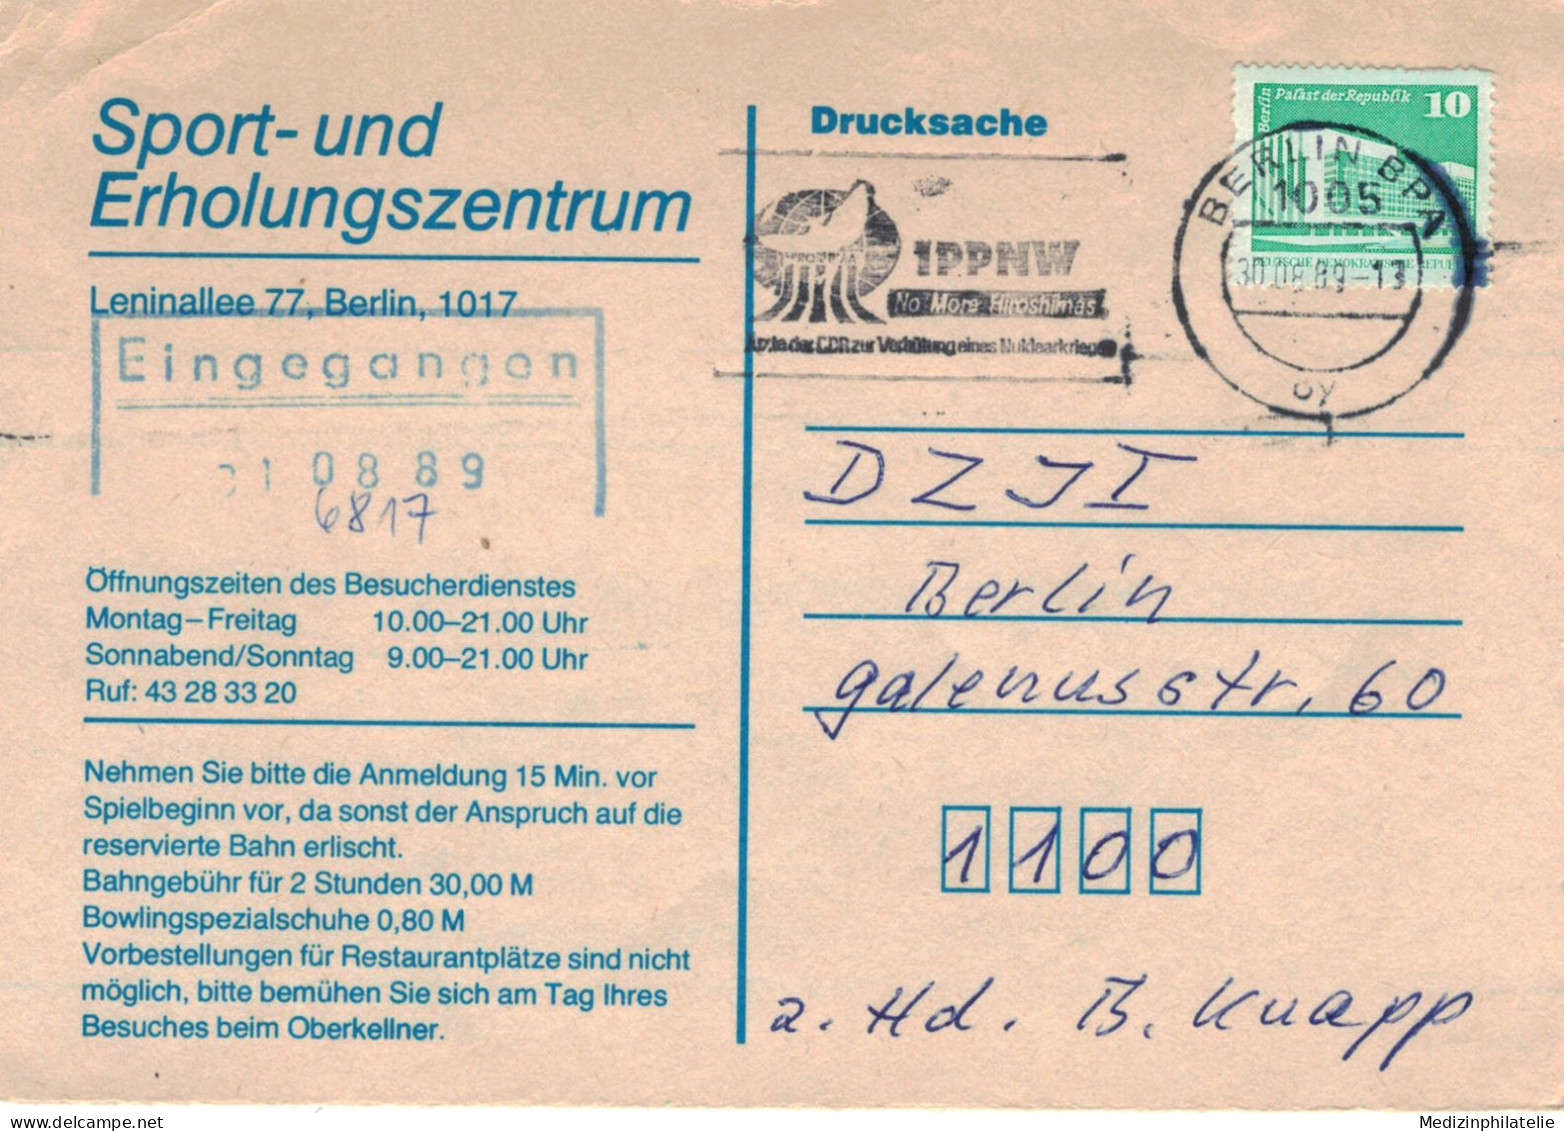 IPPNW Ärzte Der DDR Zur Verhütung Eines Nuklearkrieges Berlin 1989 - Sport-Erholungszentrum Absage Bowling-Bahn - Atomenergie